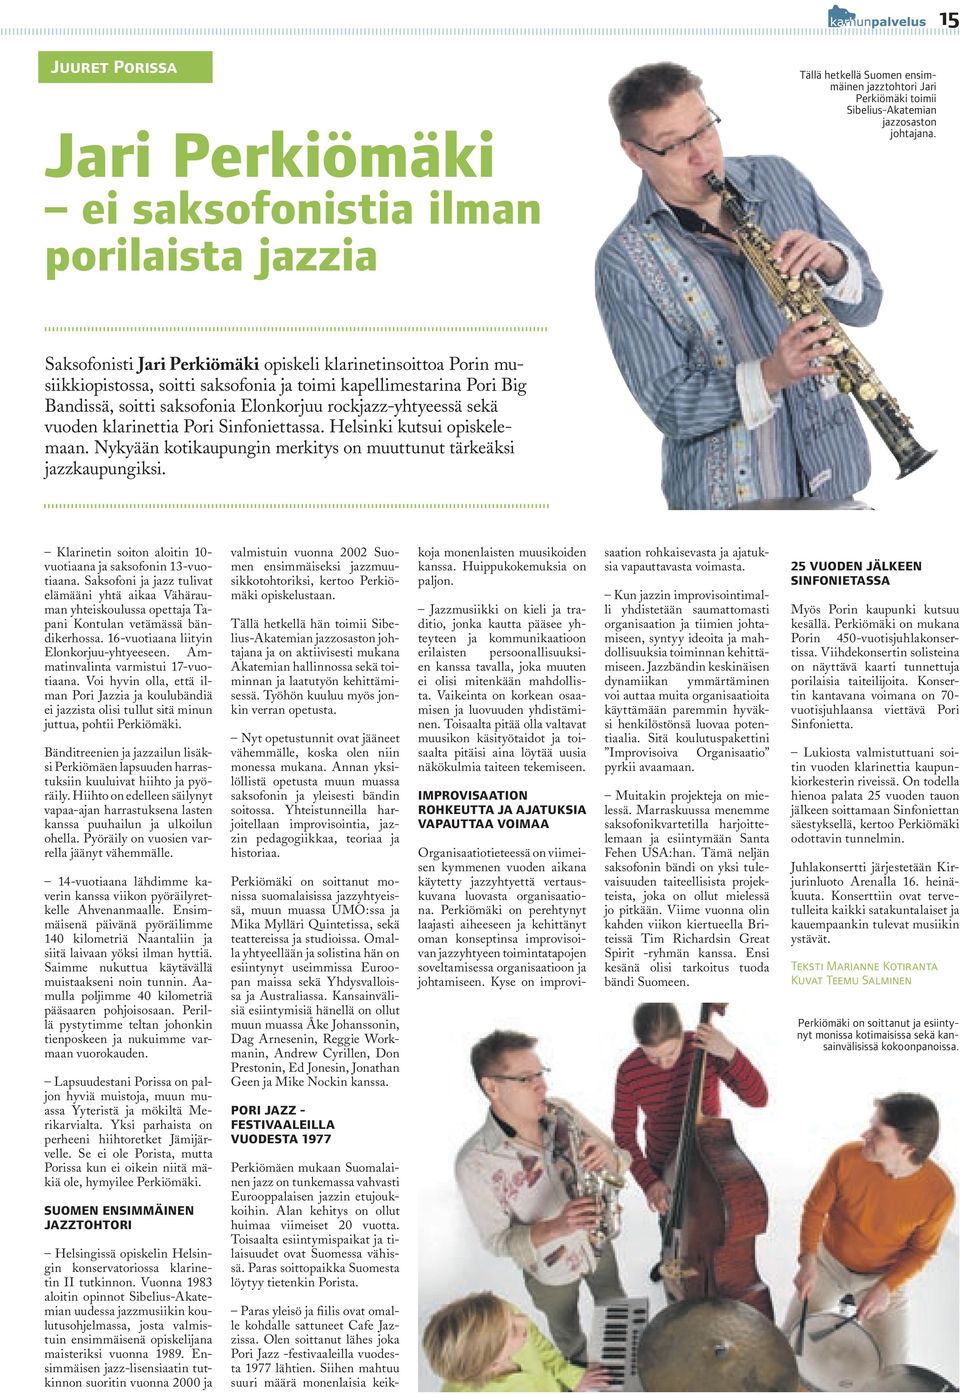 vuoden klarinettia Pori Sinfoniettassa. Helsinki kutsui opiskelemaan. Nykyään kotikaupungin merkitys on muuttunut tärkeäksi jazzkaupungiksi.